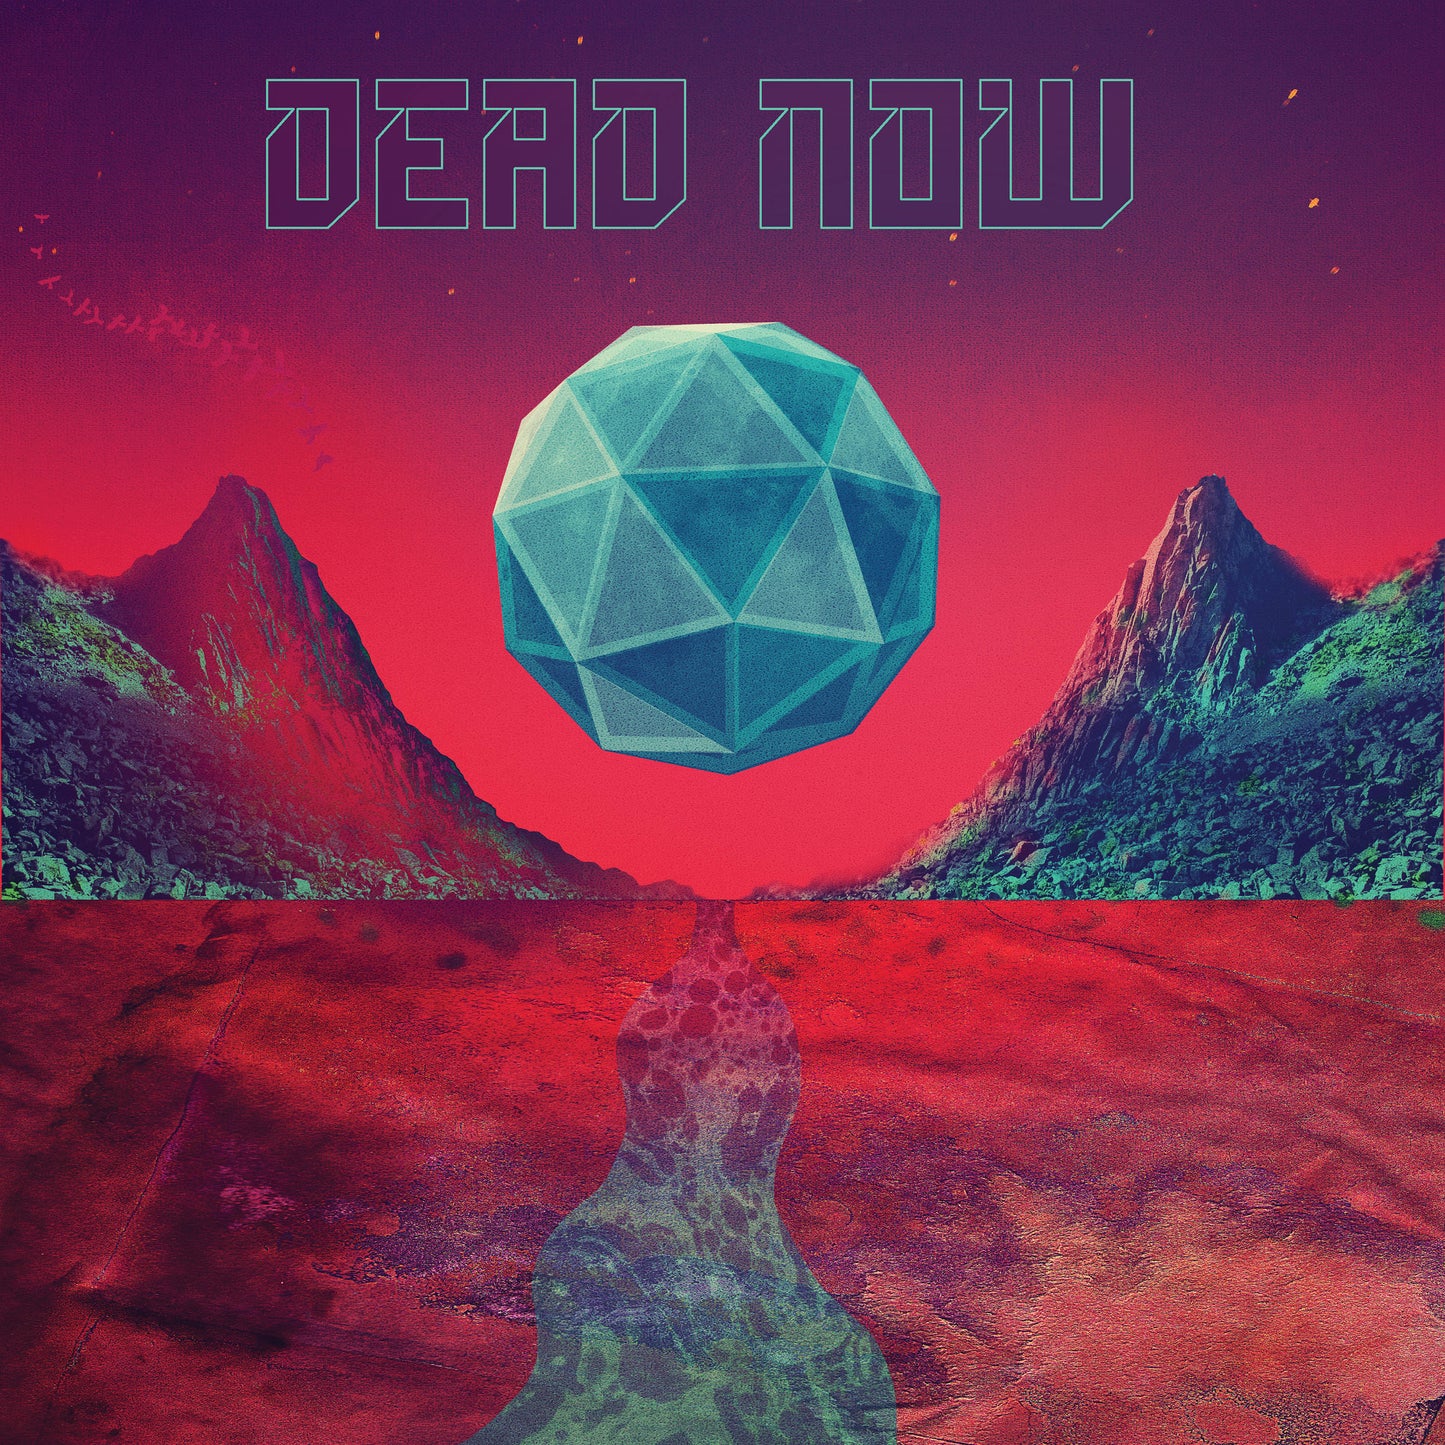 DEAD NOW - Dead Now - 12" Vinyl LP